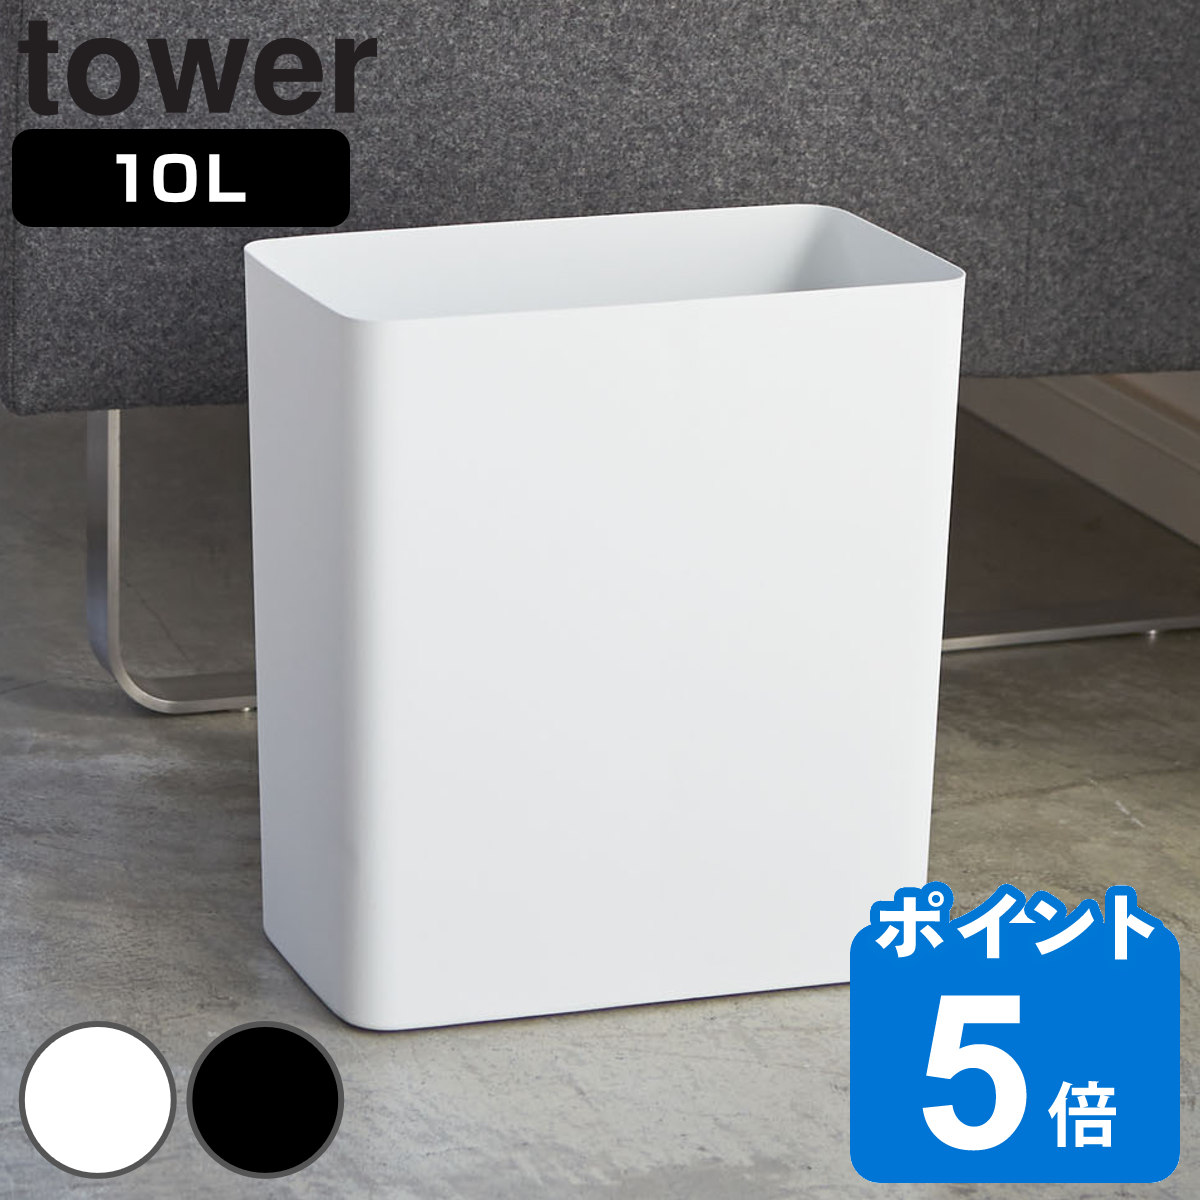 tower ゴミ箱 10L 角型